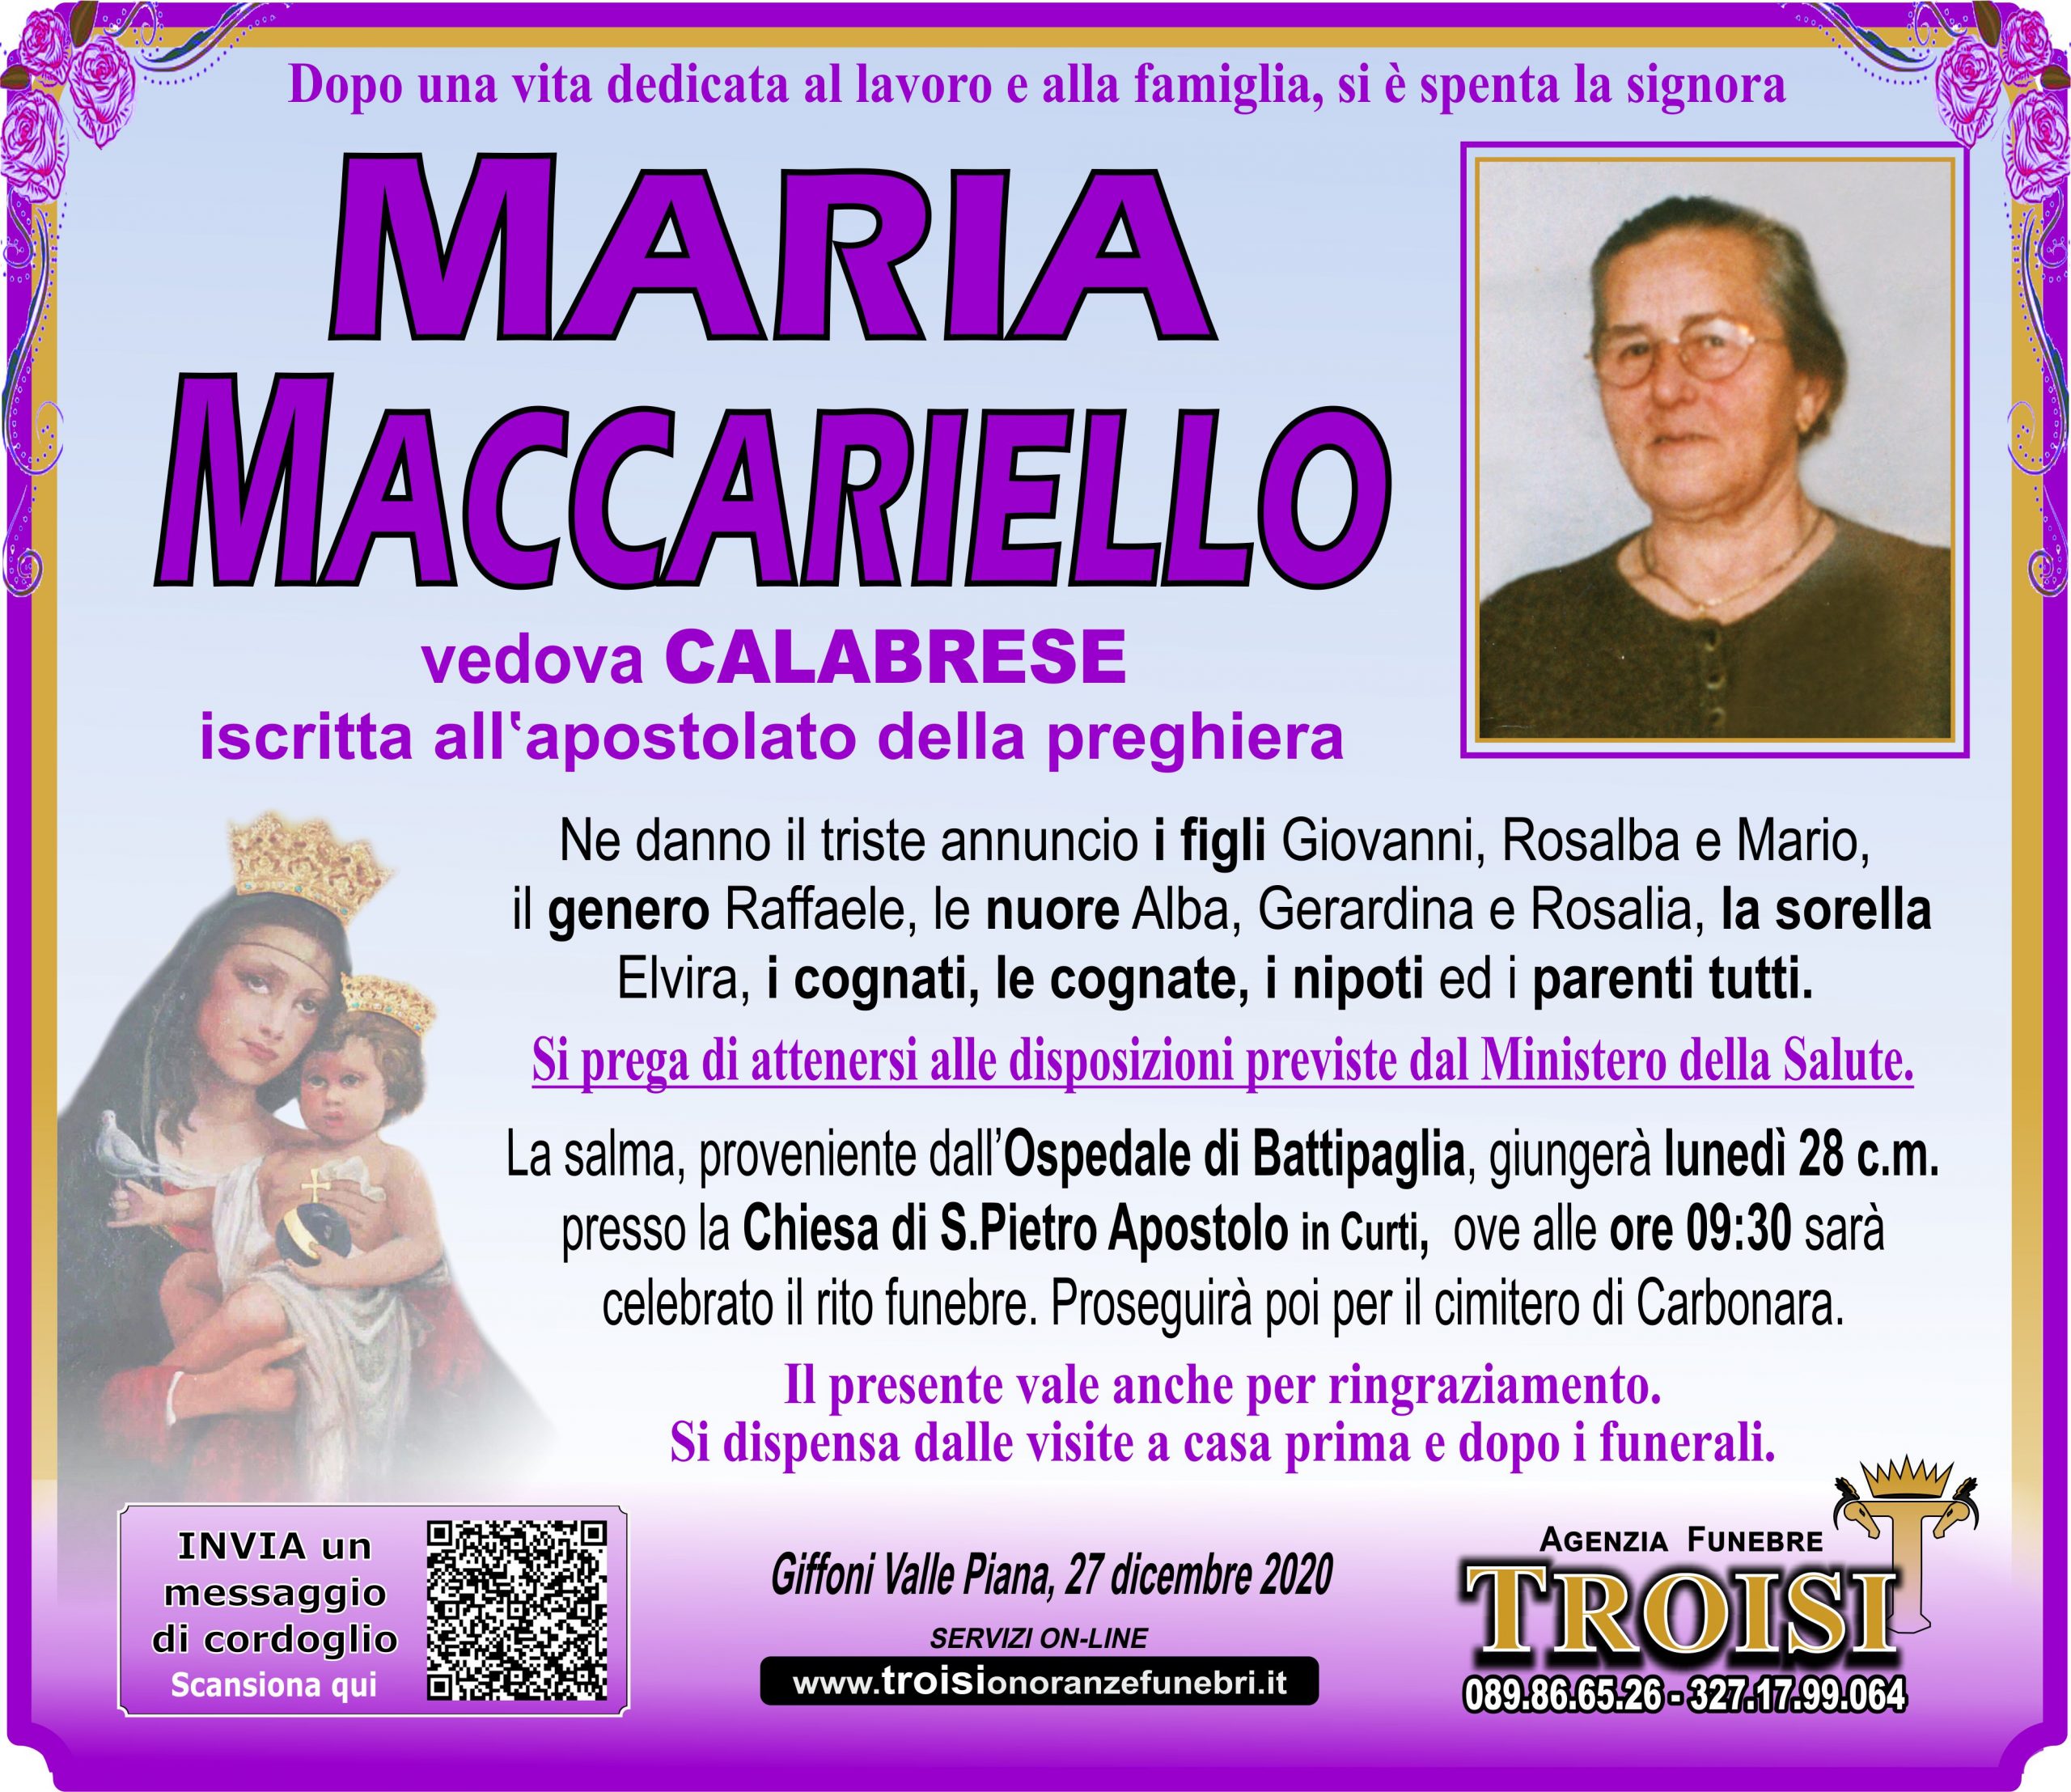 MARIA MACCARIELLO